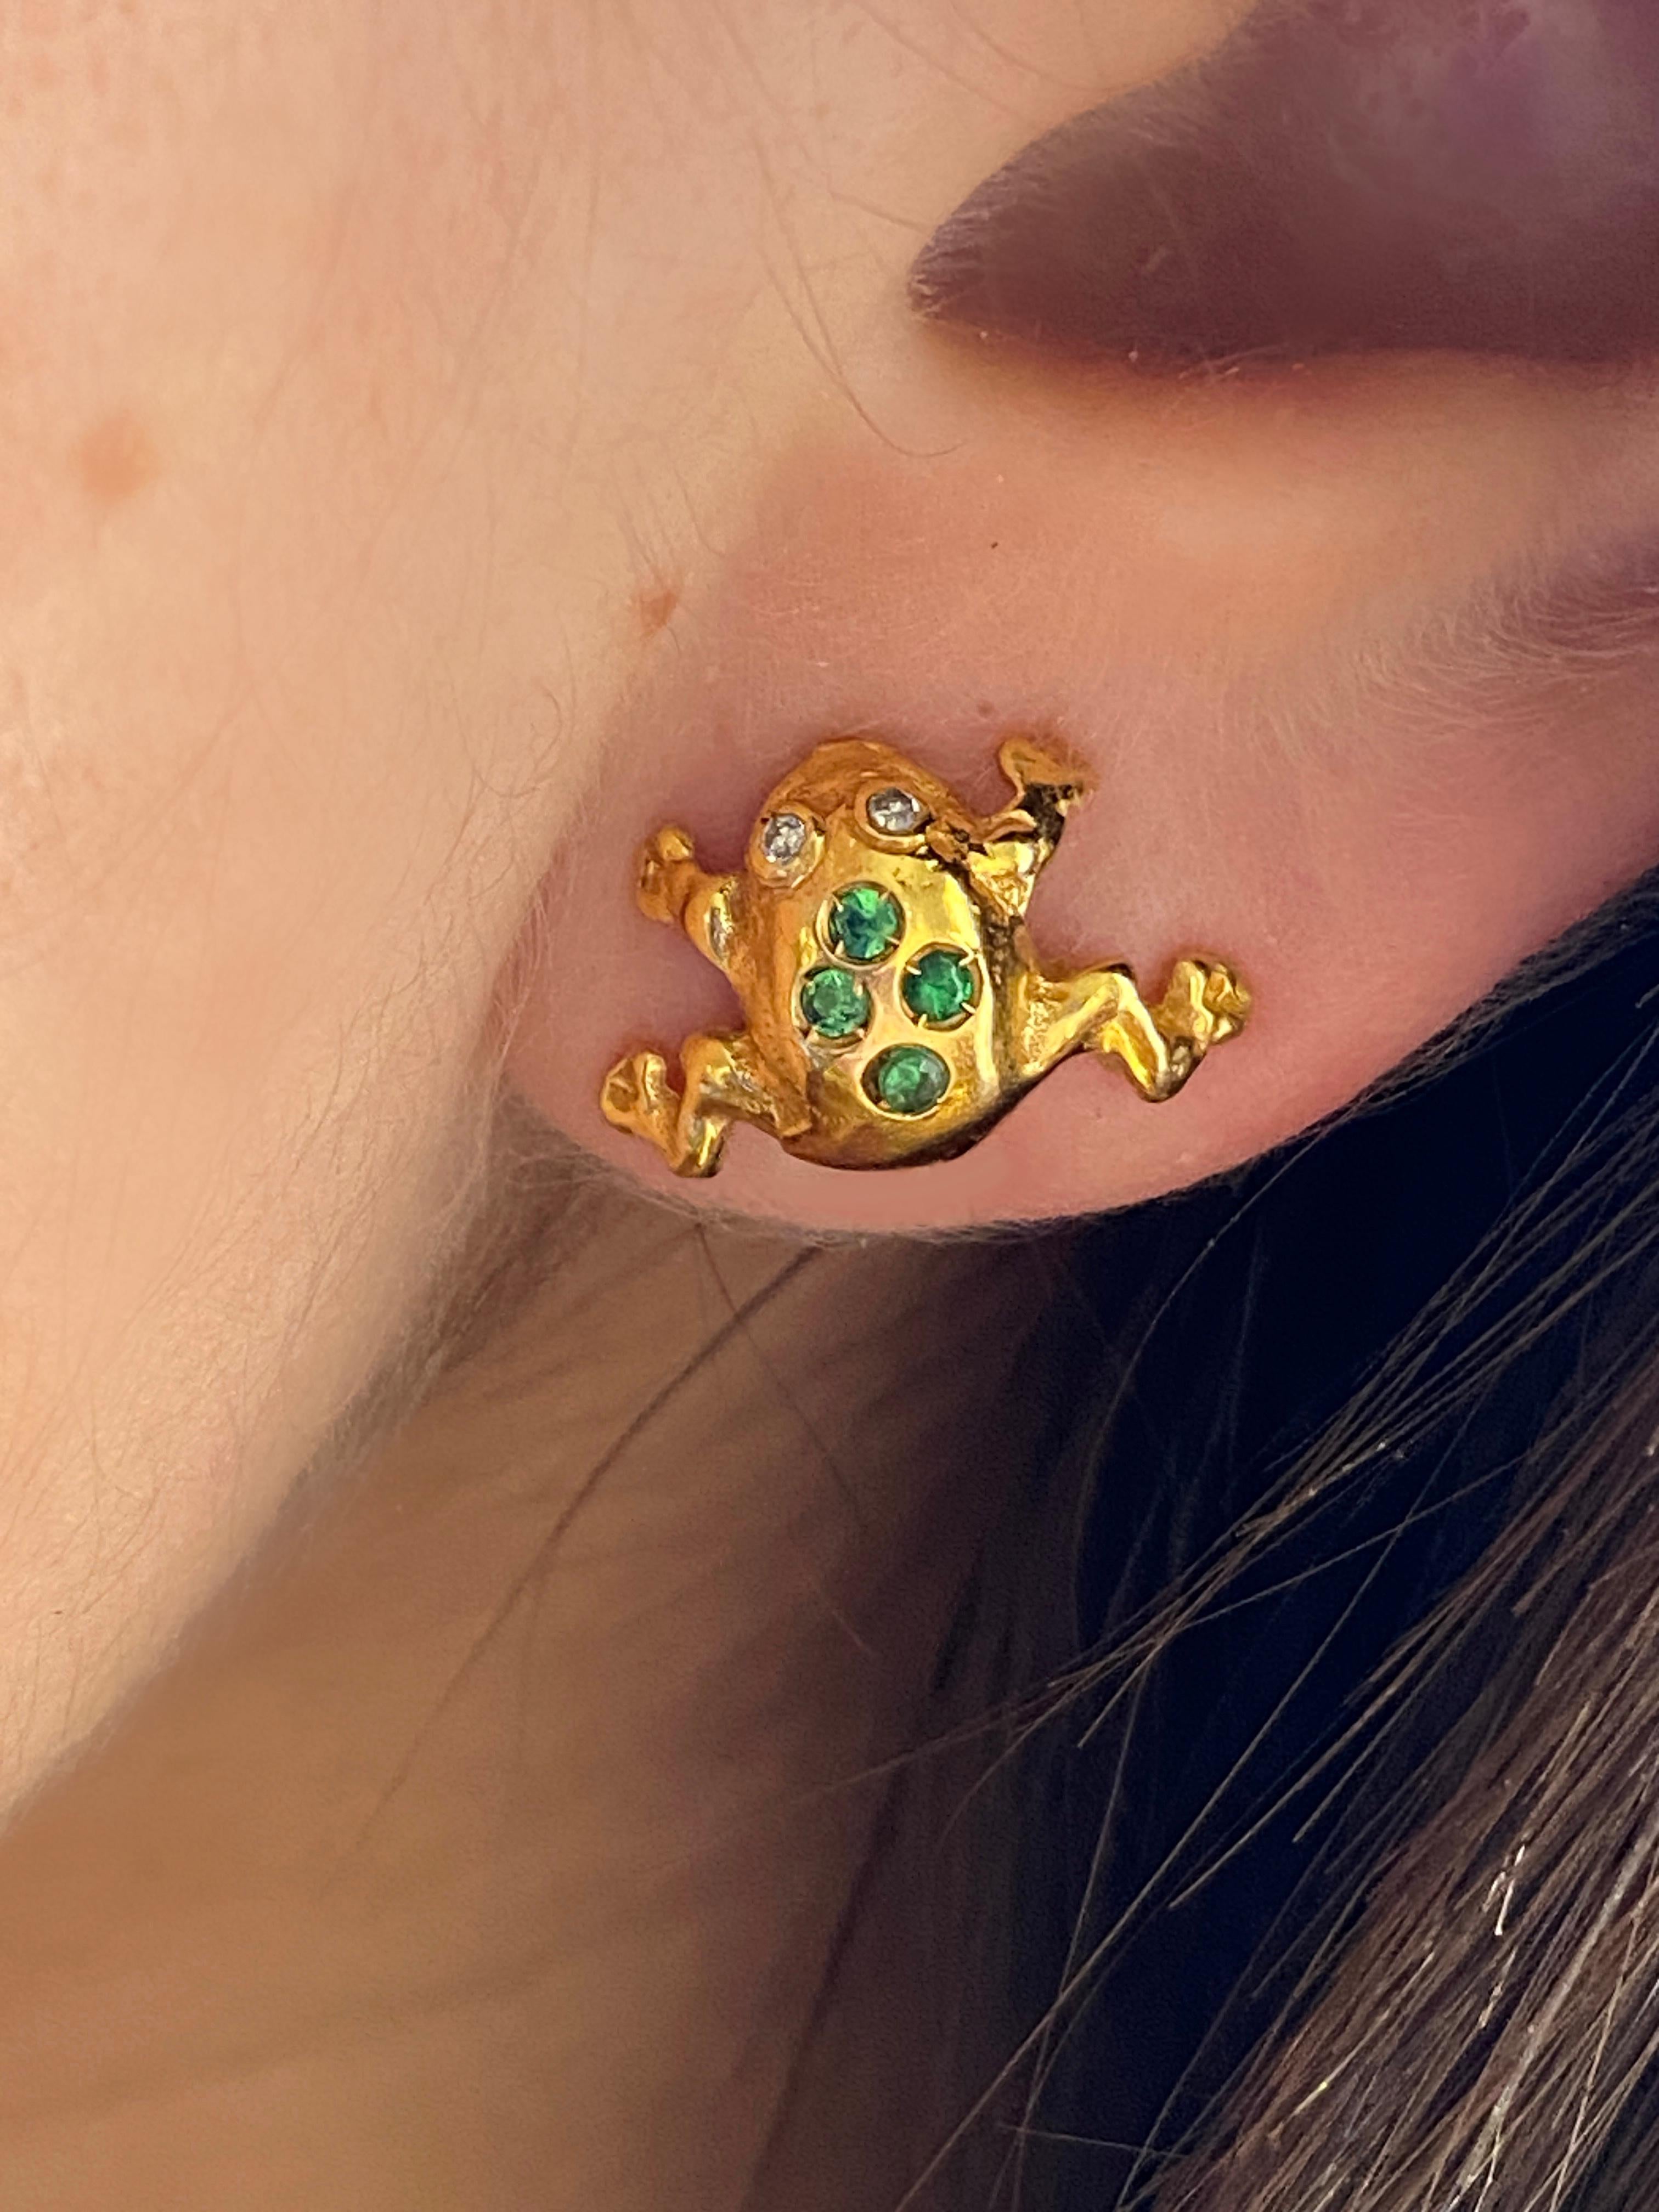 Diese Ohrstecker aus 18 Karat Gelbgold haben ein einzigartiges Design in Form von Fröschen mit Diamantenaugen und sind mit wunderschönen Smaragden verziert.
Diese in Italien von Rossella Ugolini handgefertigten Ohrringe sind ein perfektes Geschenk